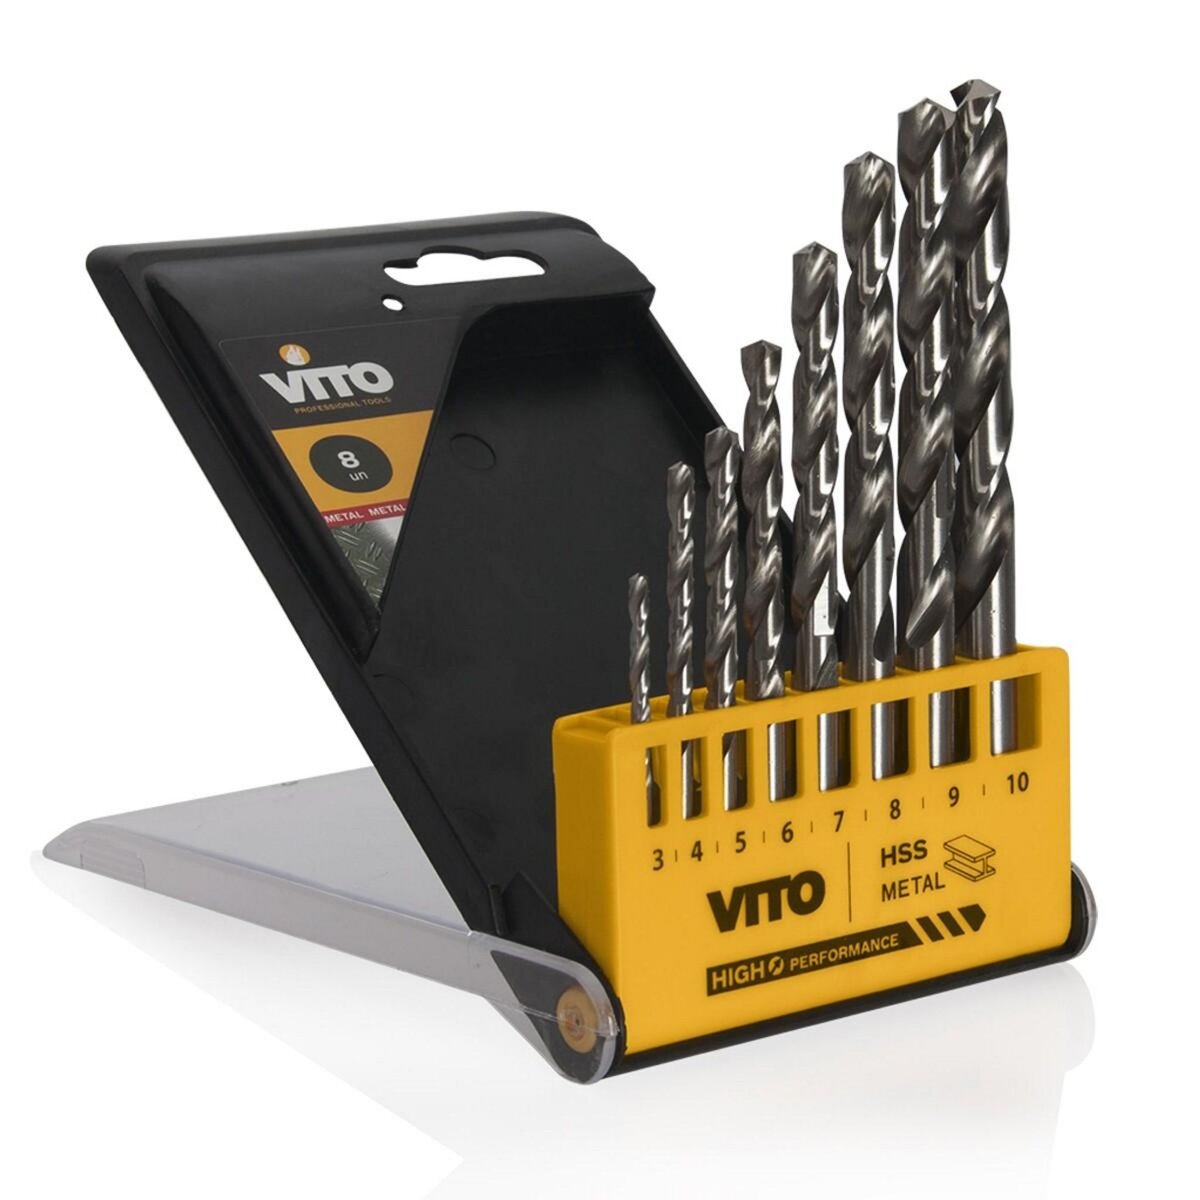 VITO Pro-Power Forets Acier Coffret de 8 pièces Diamètre 3,4,5,6,7,8,9,10  mm VITOPOWER pas cher 